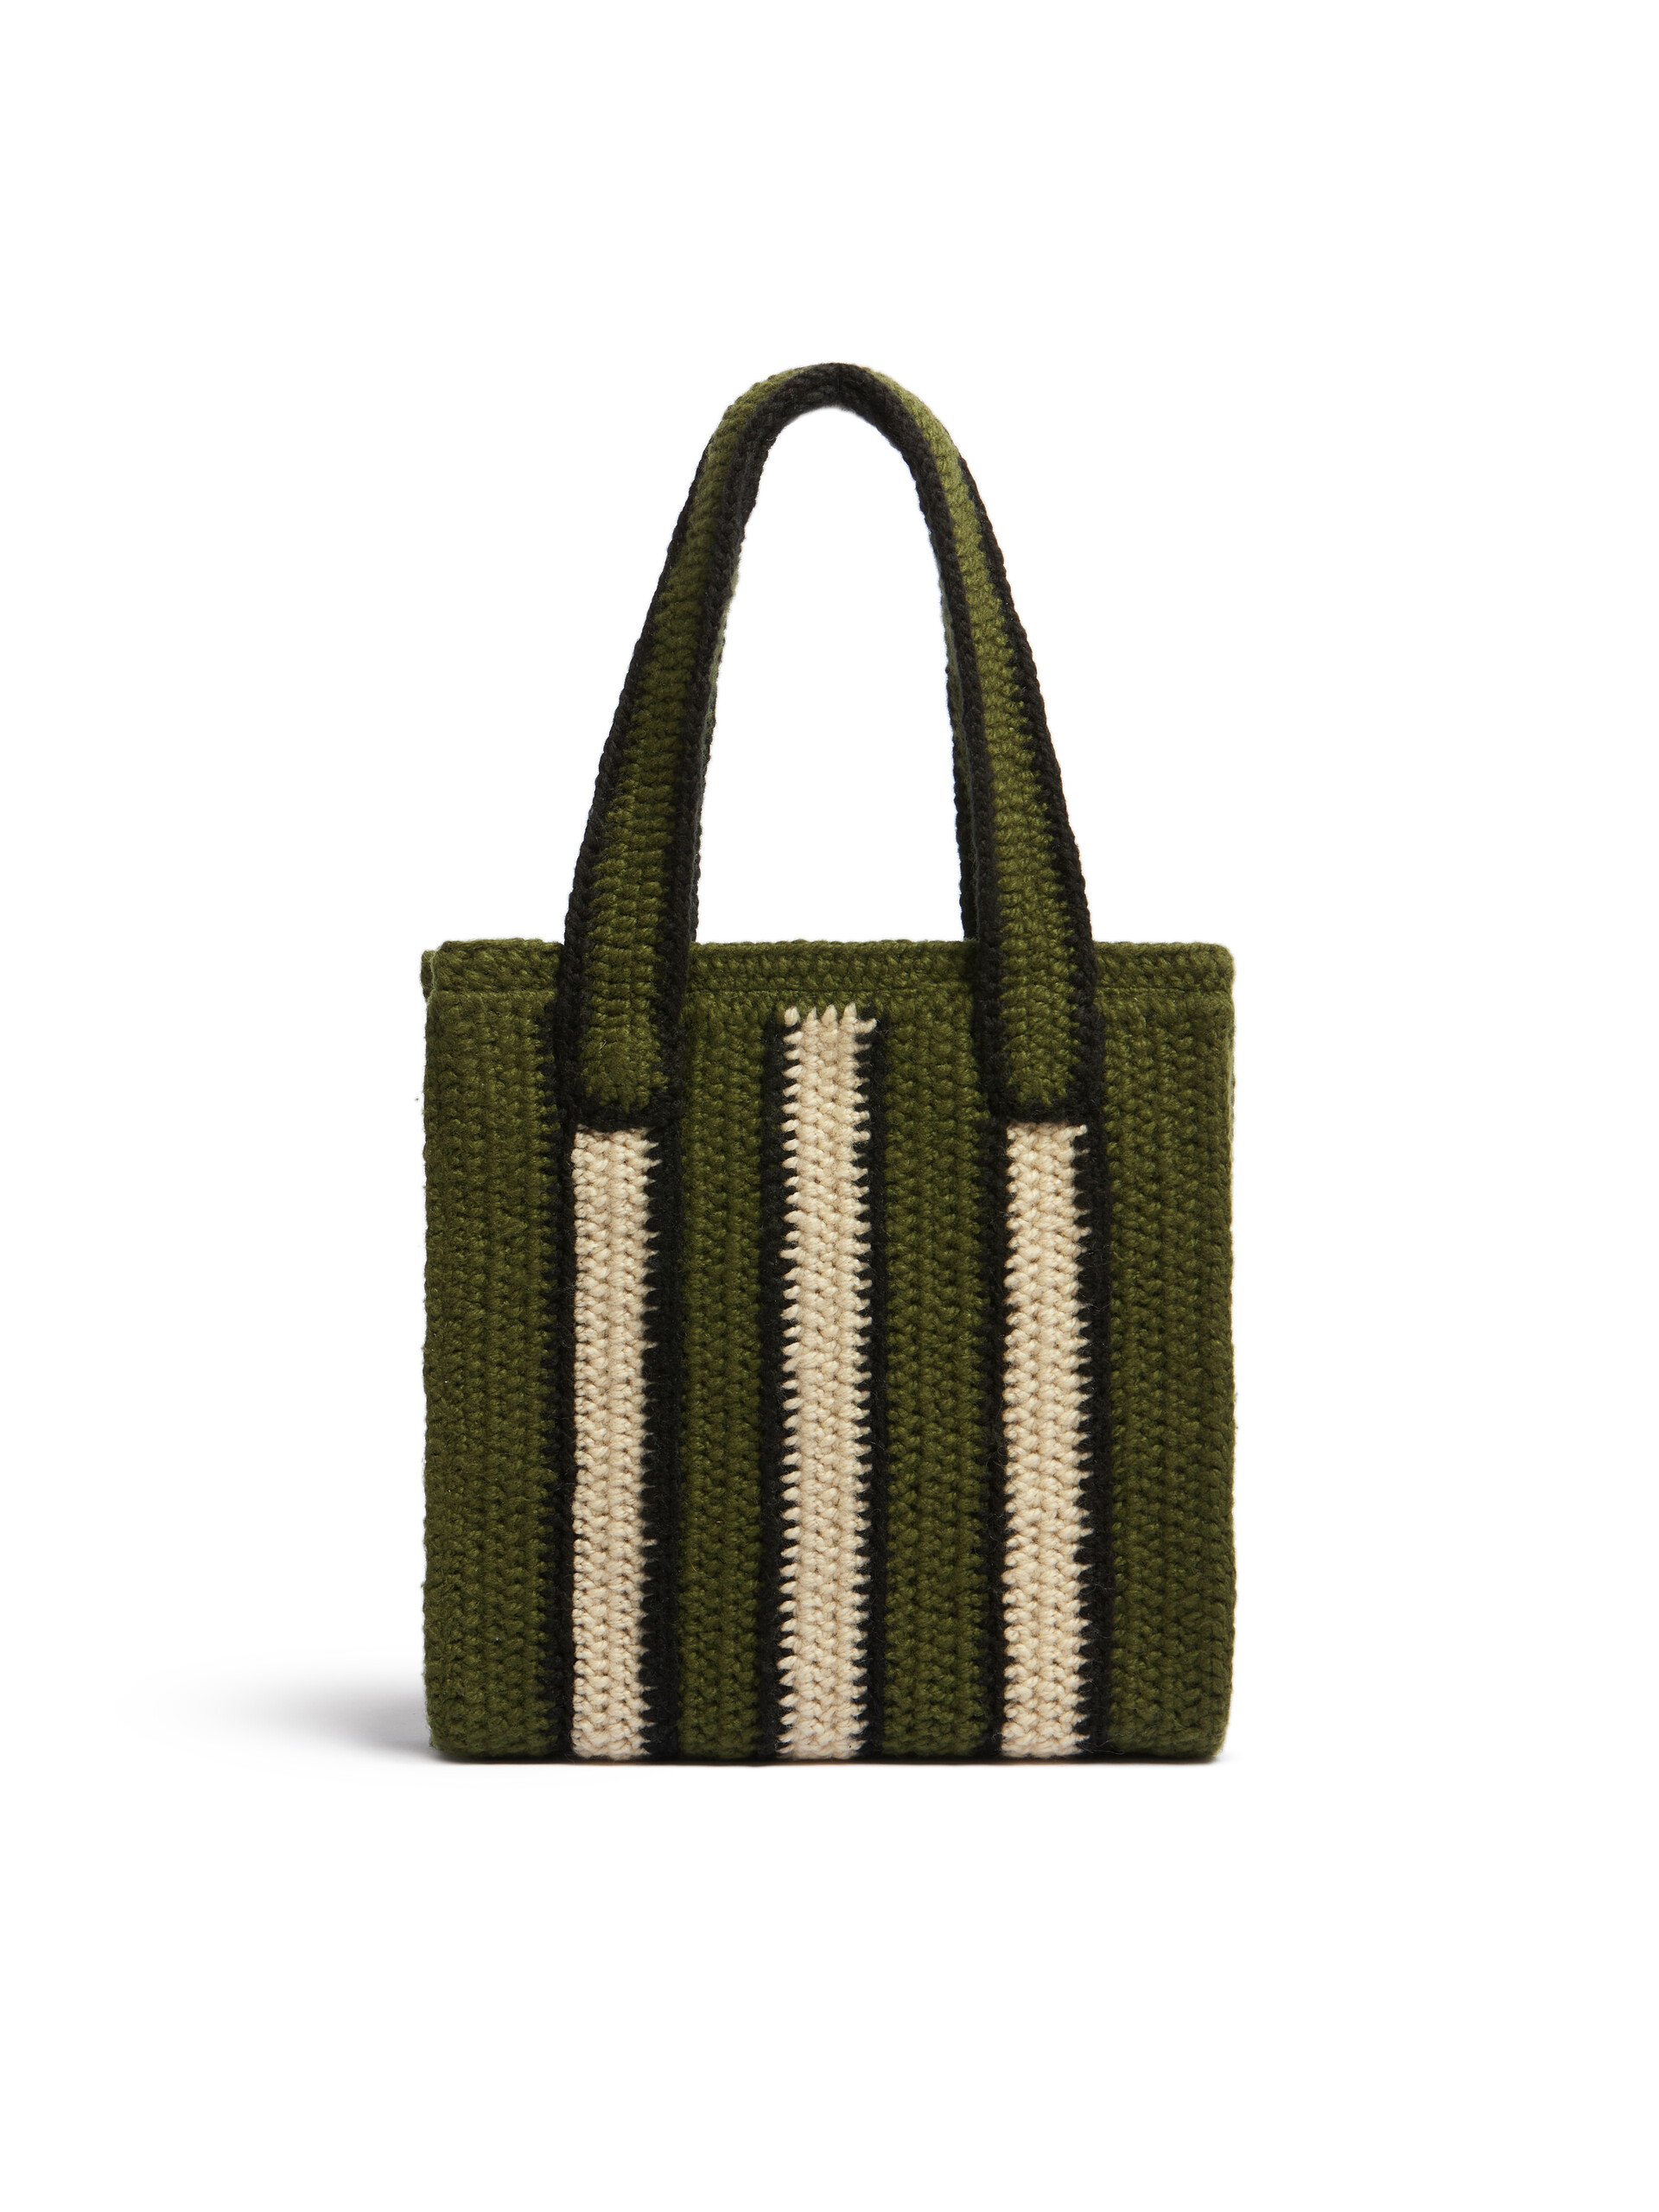 Borsa shopping MARNI MARKET in crochet con motivo rigato in verde bianco e nero - Borse - Image 3